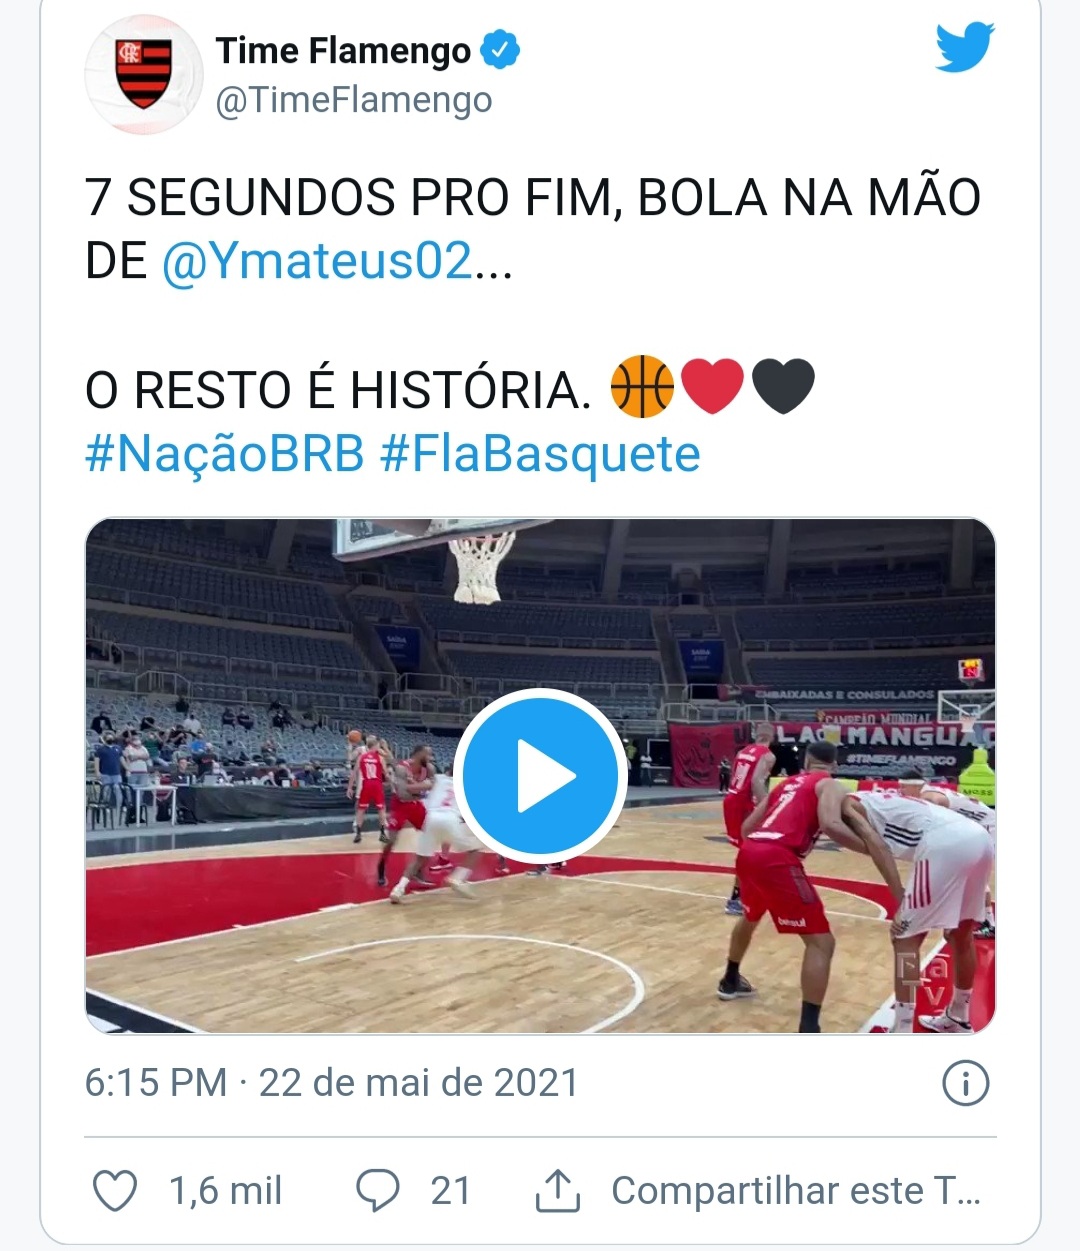 NBB: Flamengo vence São Paulo no primeiro jogo da final